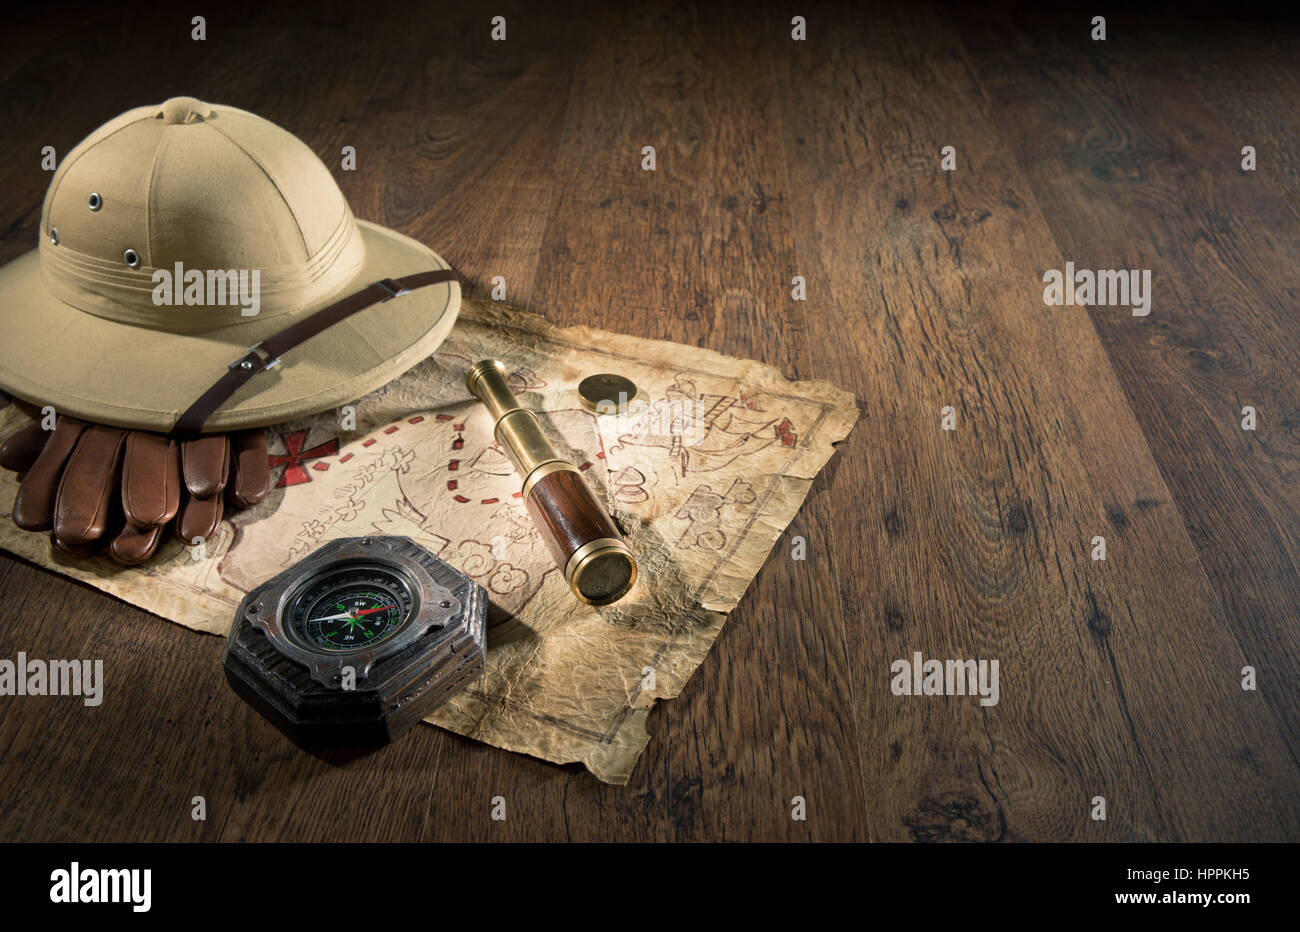 Vieille carte au trésor au style colonial pith hat, bras télescope et boussole. Banque D'Images